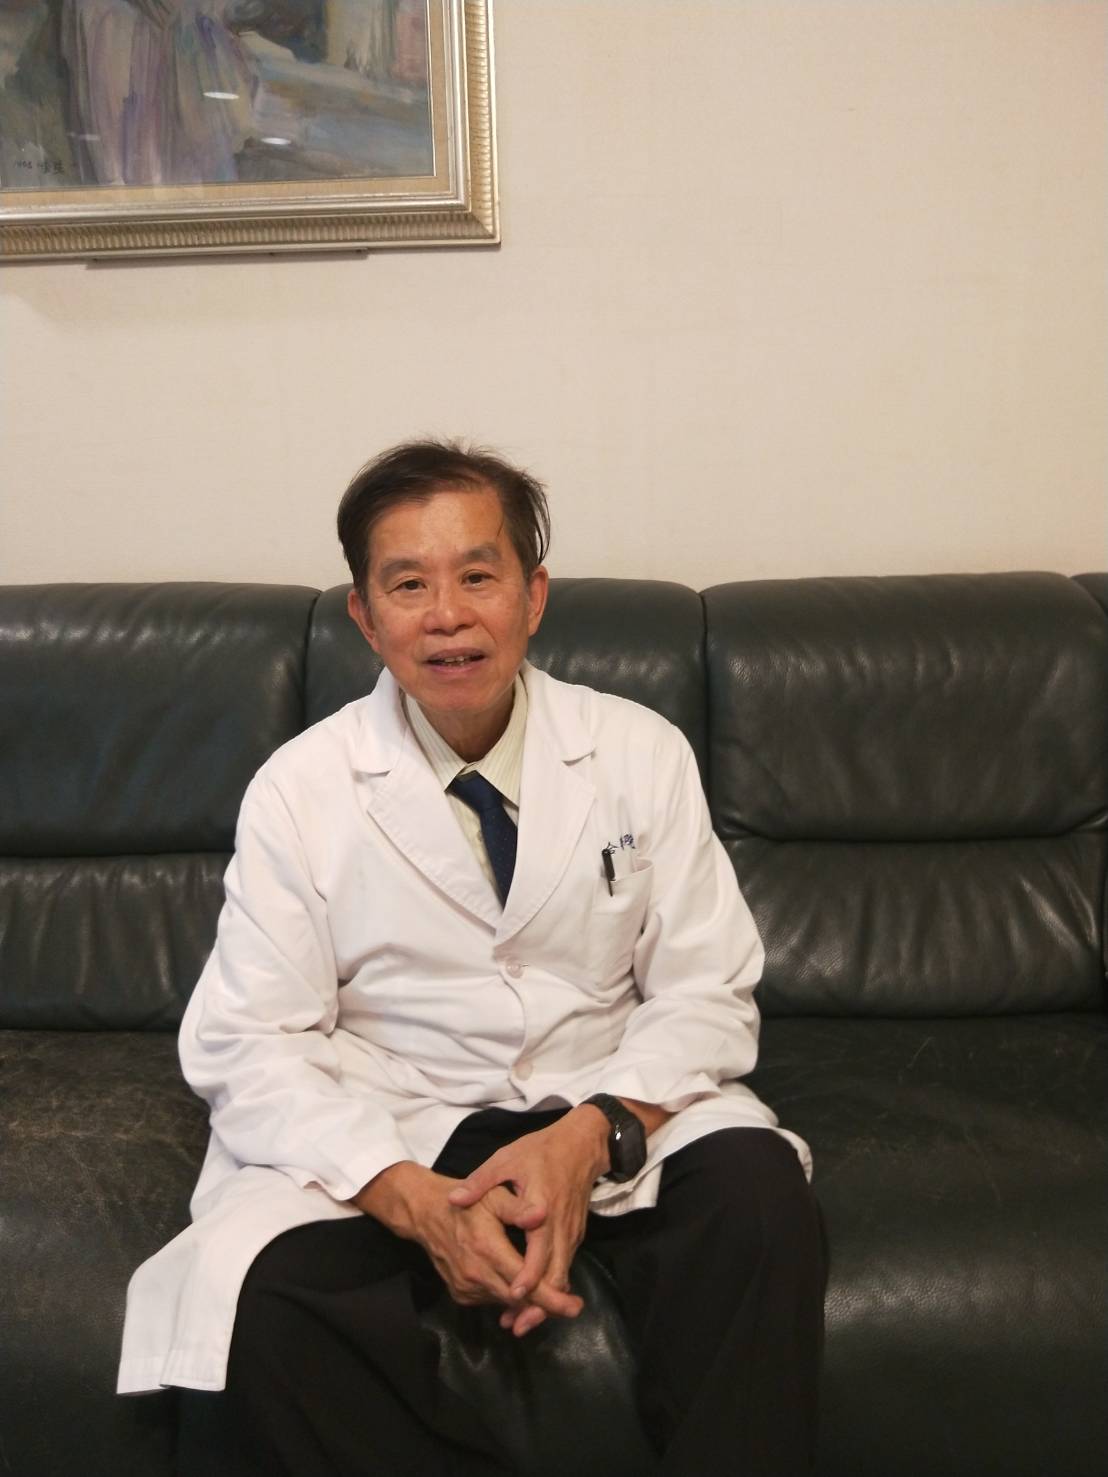 郭綜合醫院婦產部主任醫師李耀泰認為維他命C能防治許多疾病